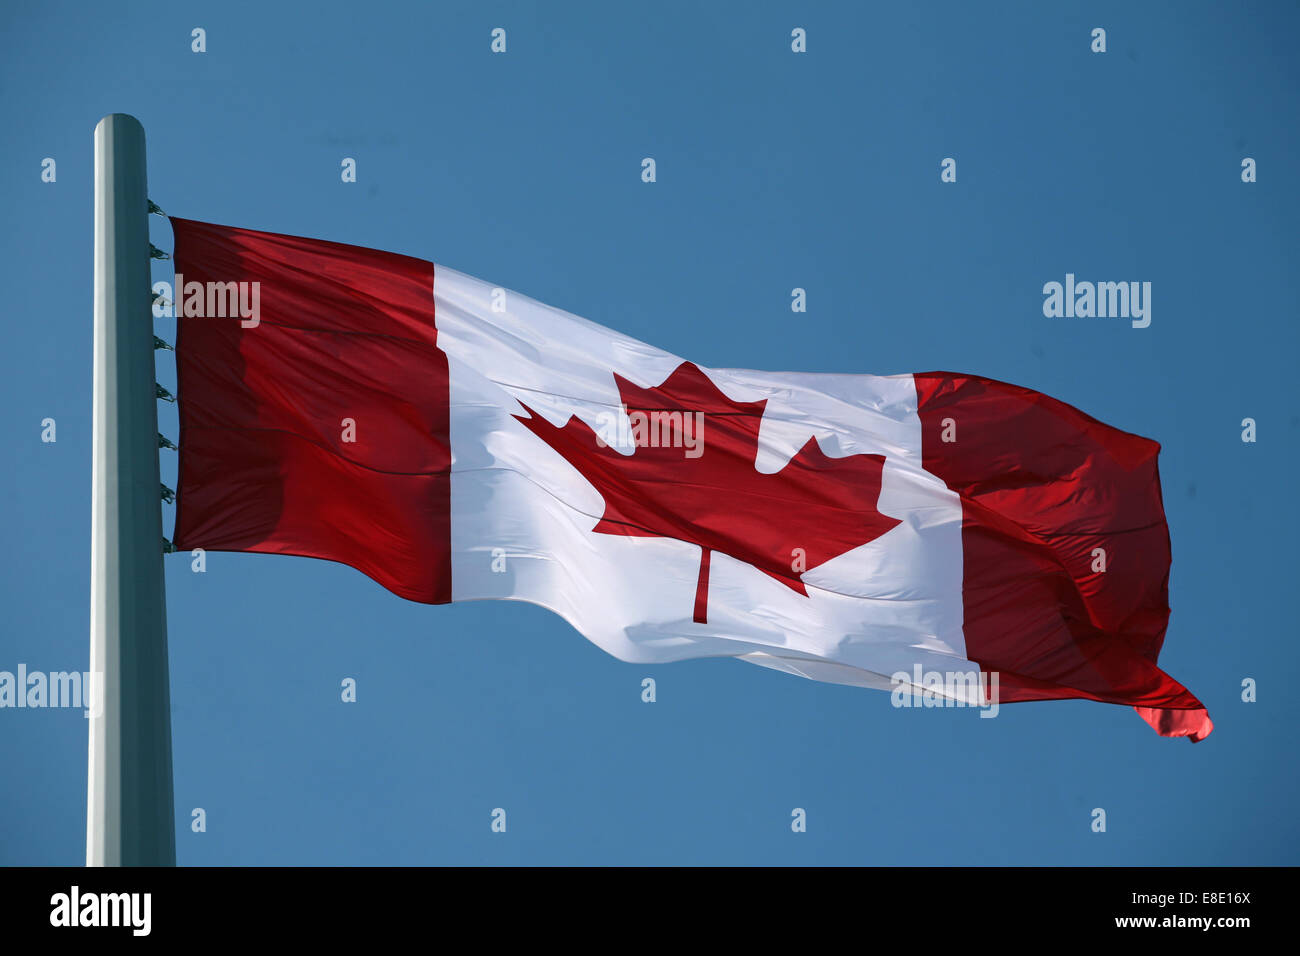 Le drapeau national du Canada, La Feuille d'érable et l'Unifolié Banque D'Images